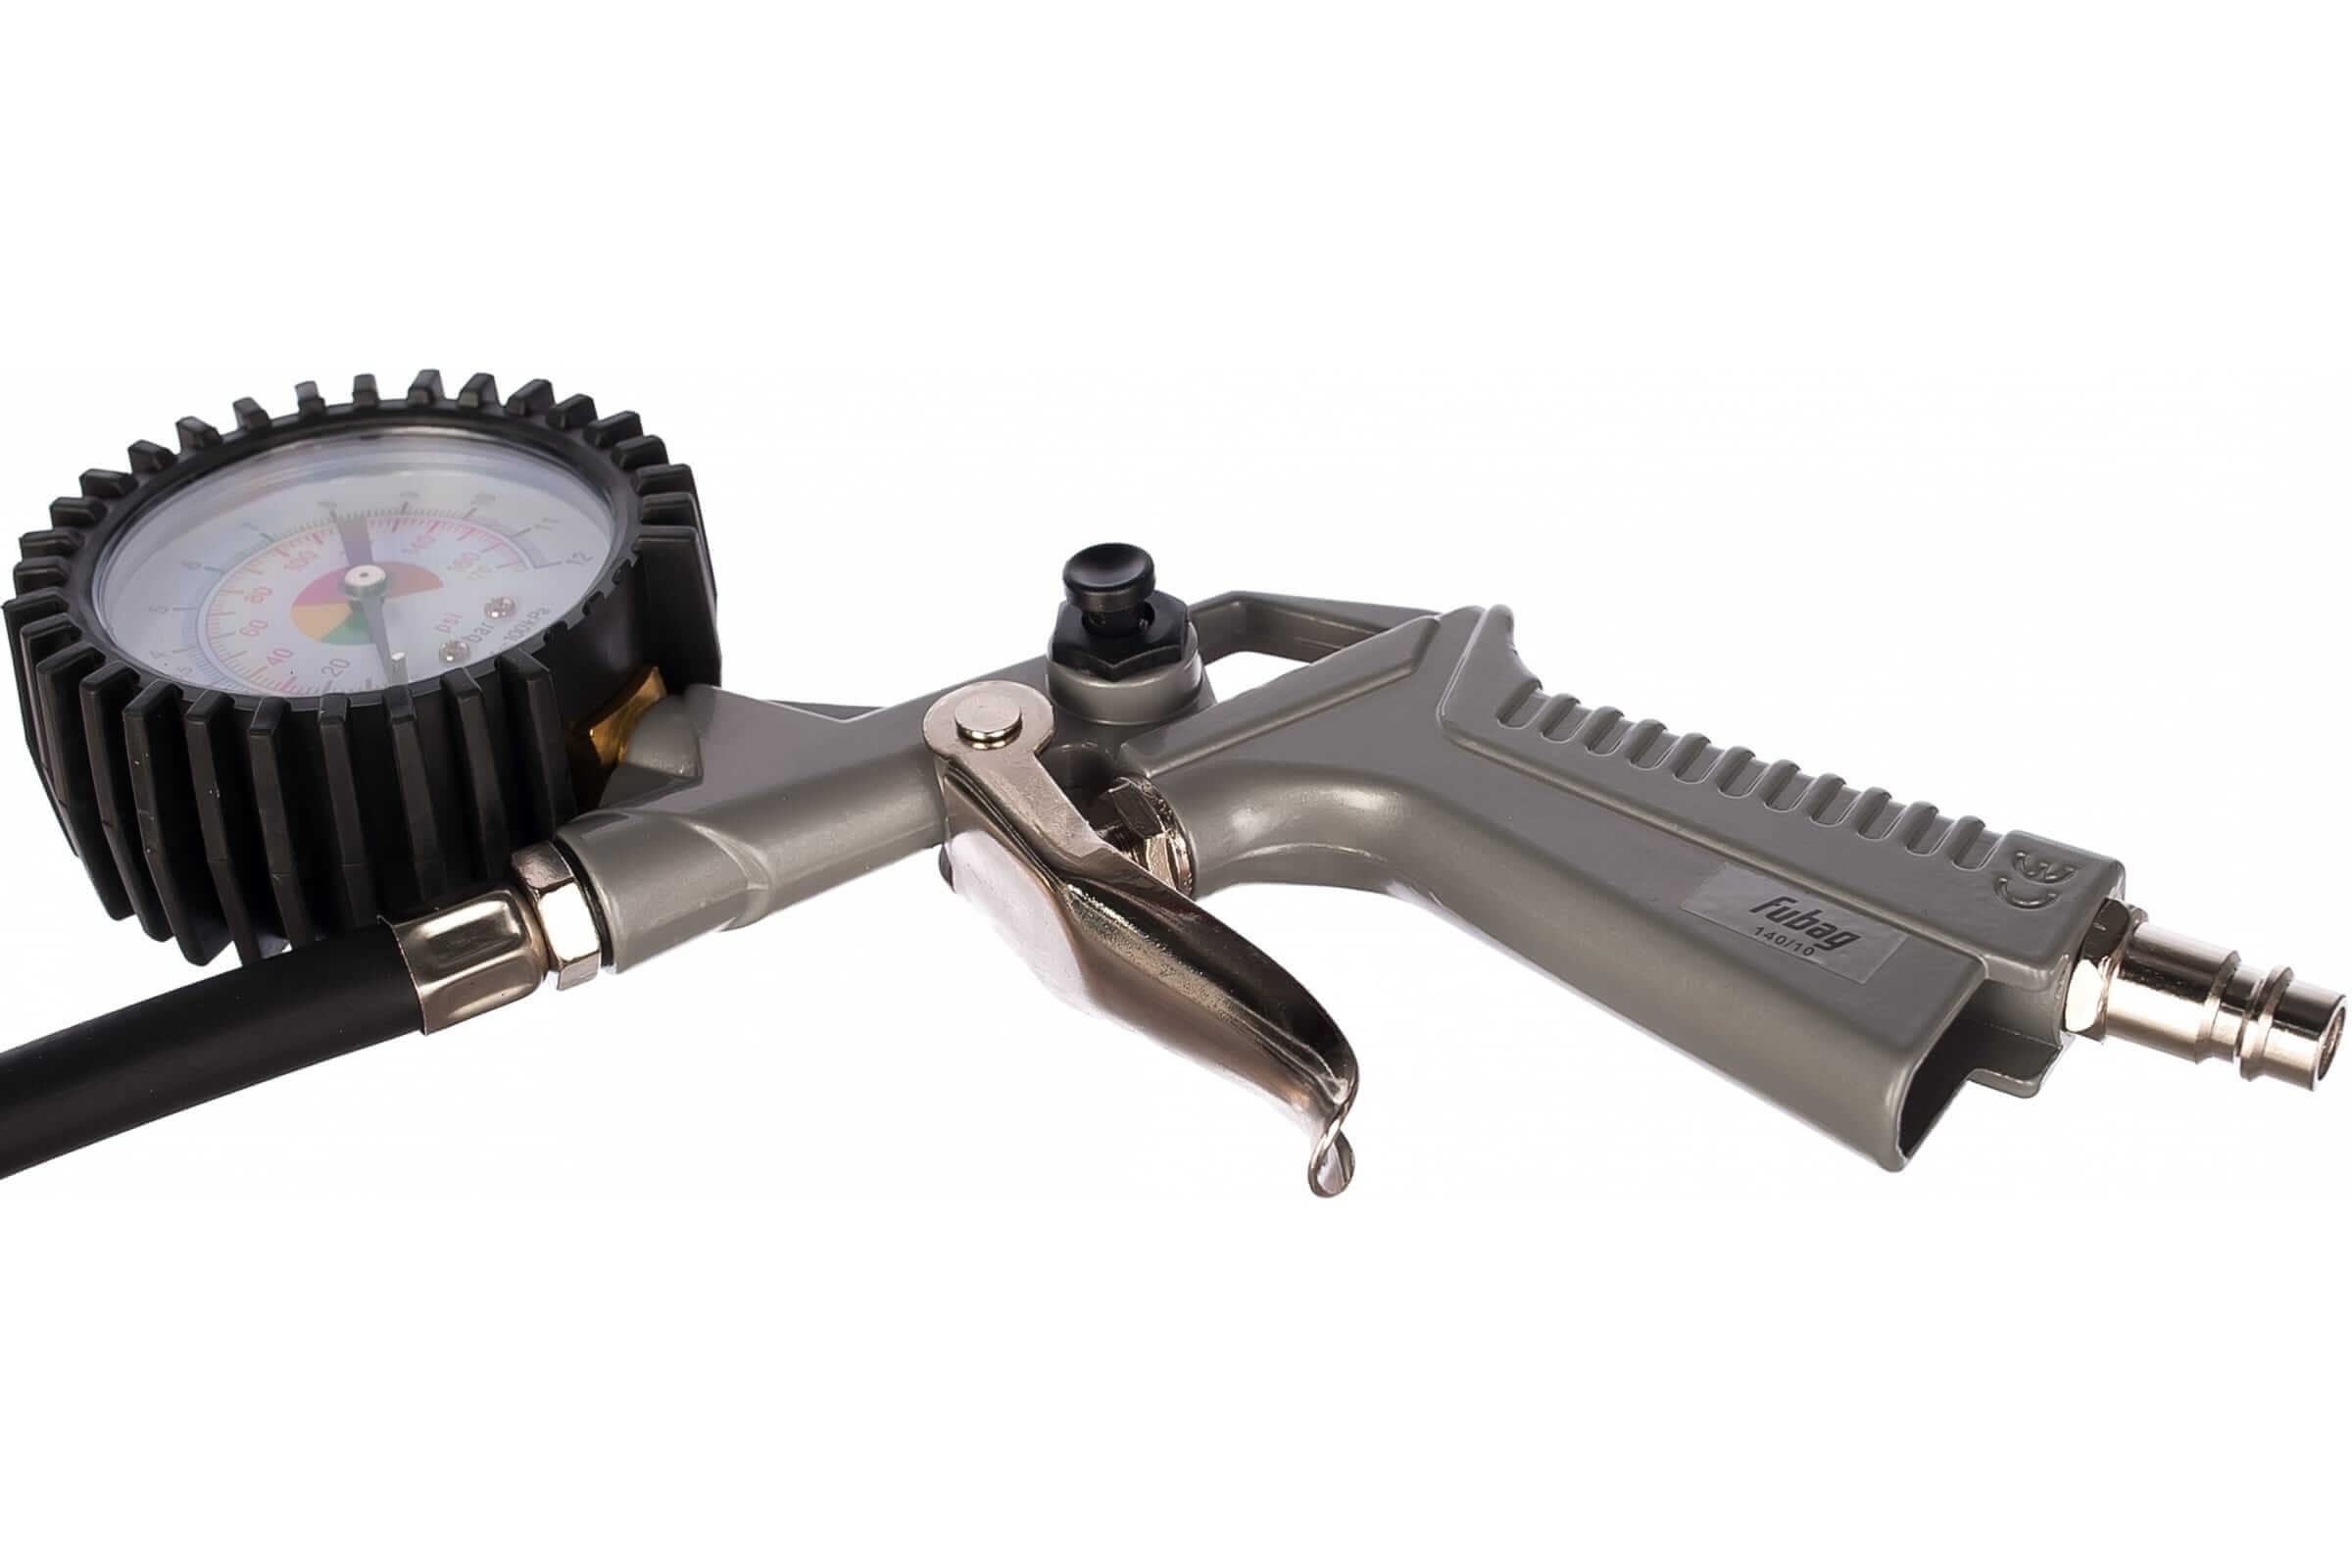 Компрессор масляный FUBAG FC230/24 СМ2 +пистолет для накачки шин